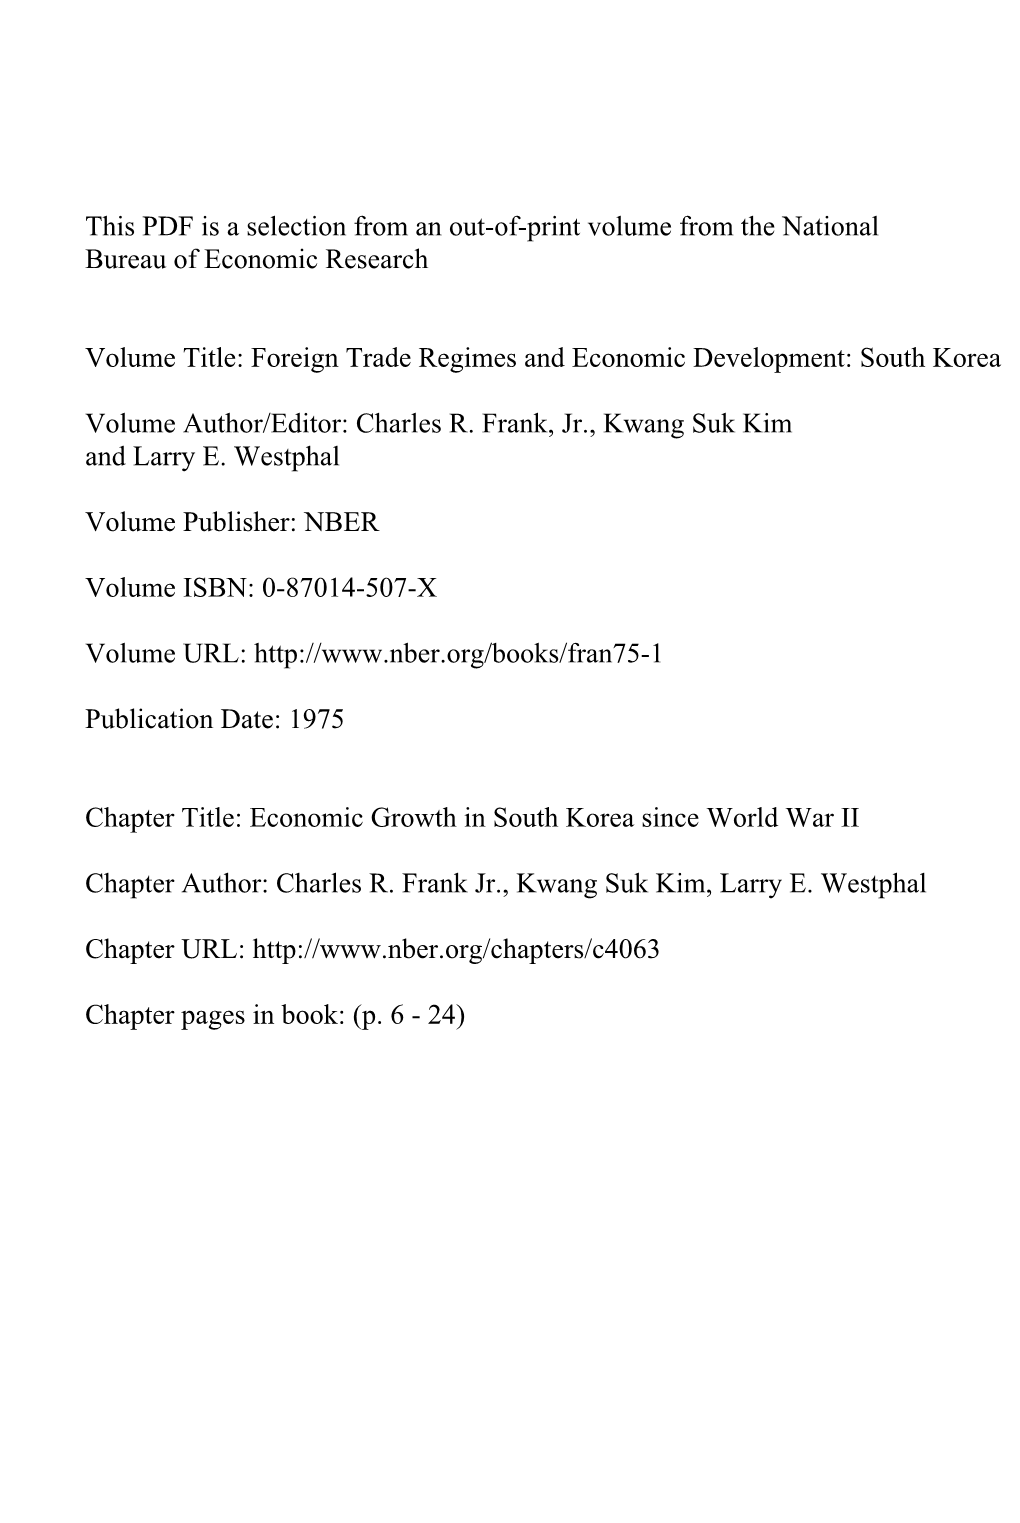 Foreign Trade Regimes and Economic Development: South Korea